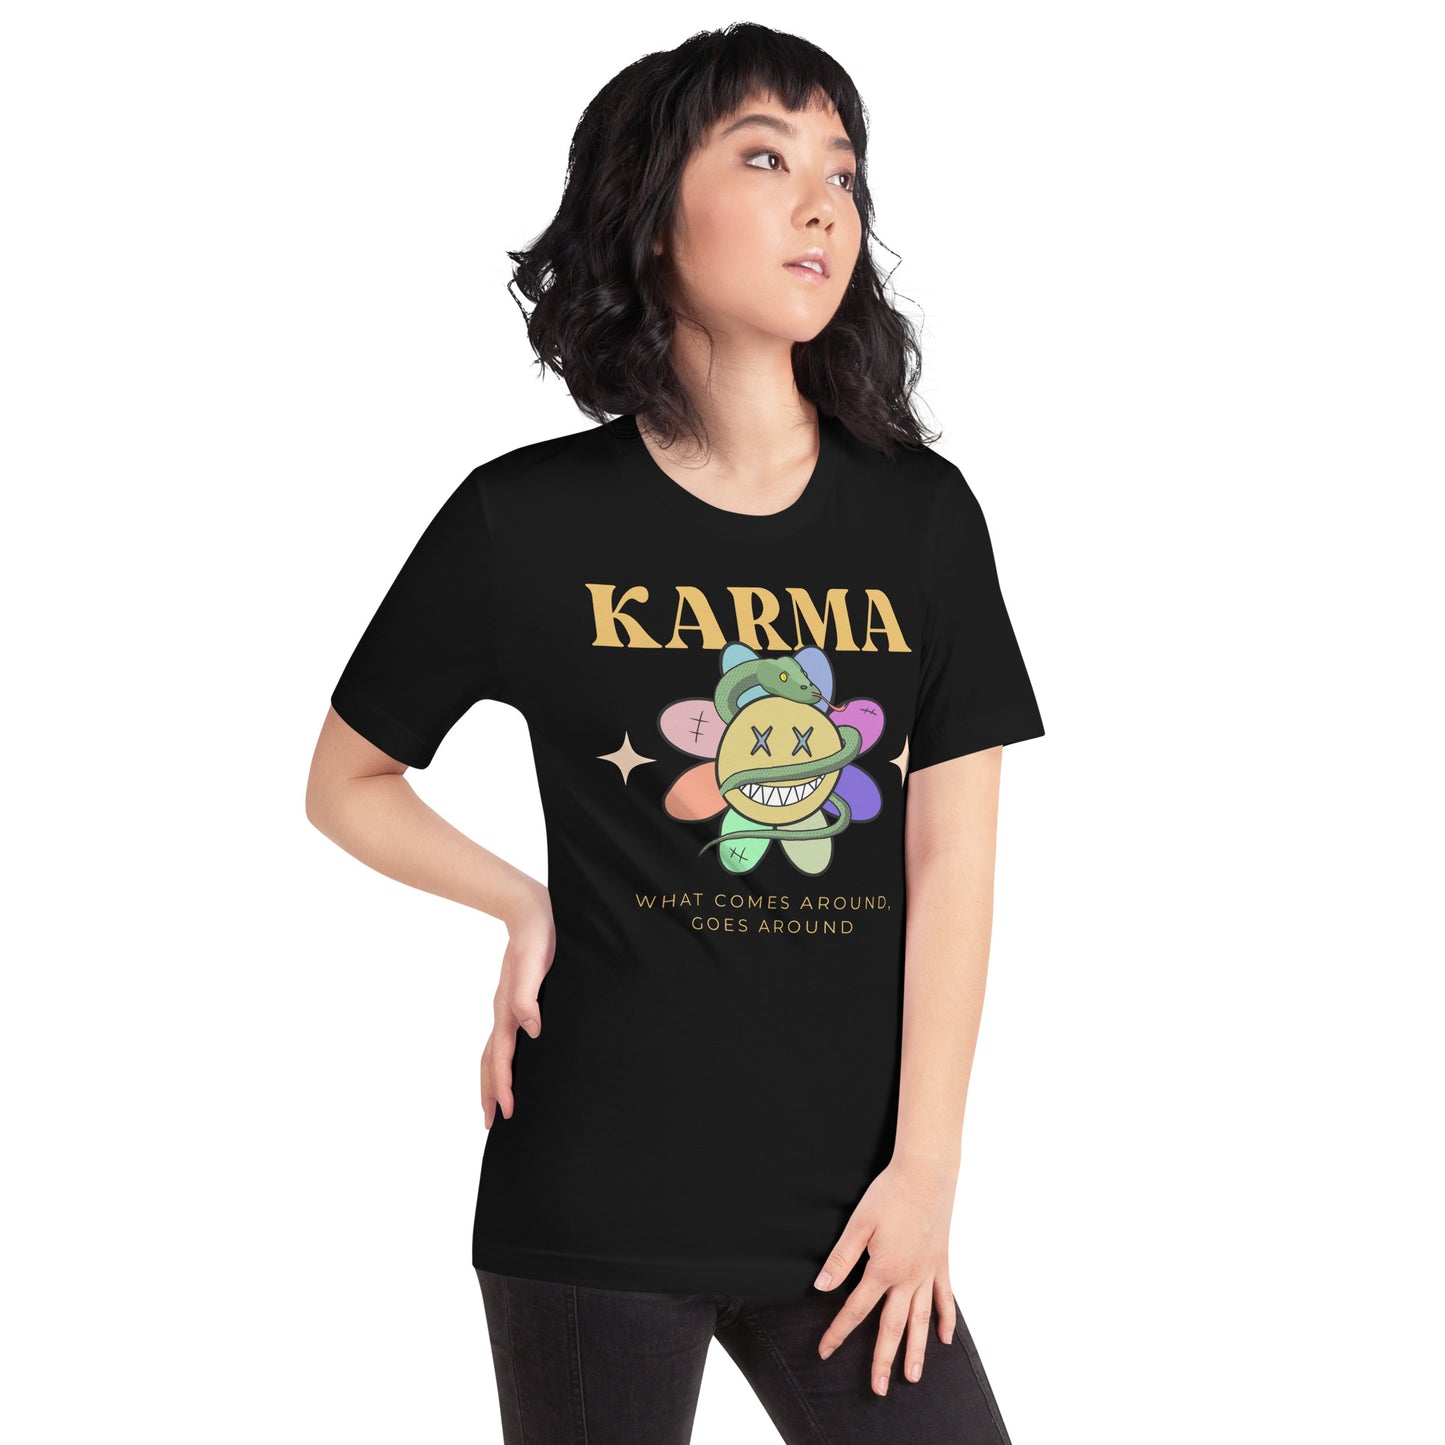 Karma - T-Shirt